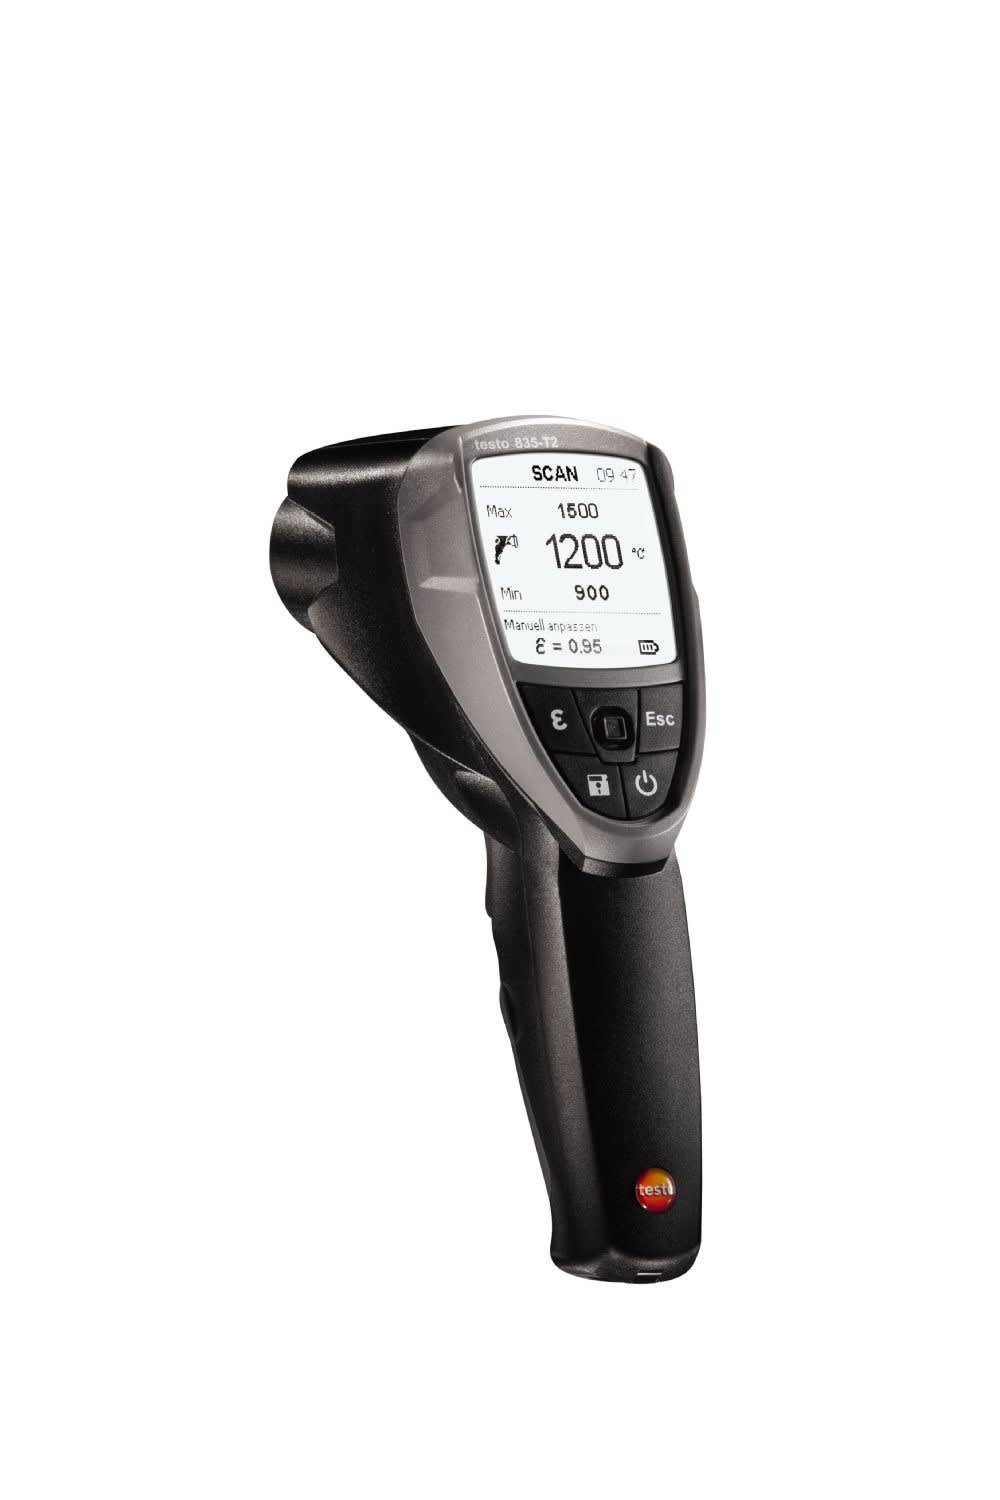 TESTO - testo 835-T2 - Thermometre Infrarouge haute temperature (jusqu'a 1600C)